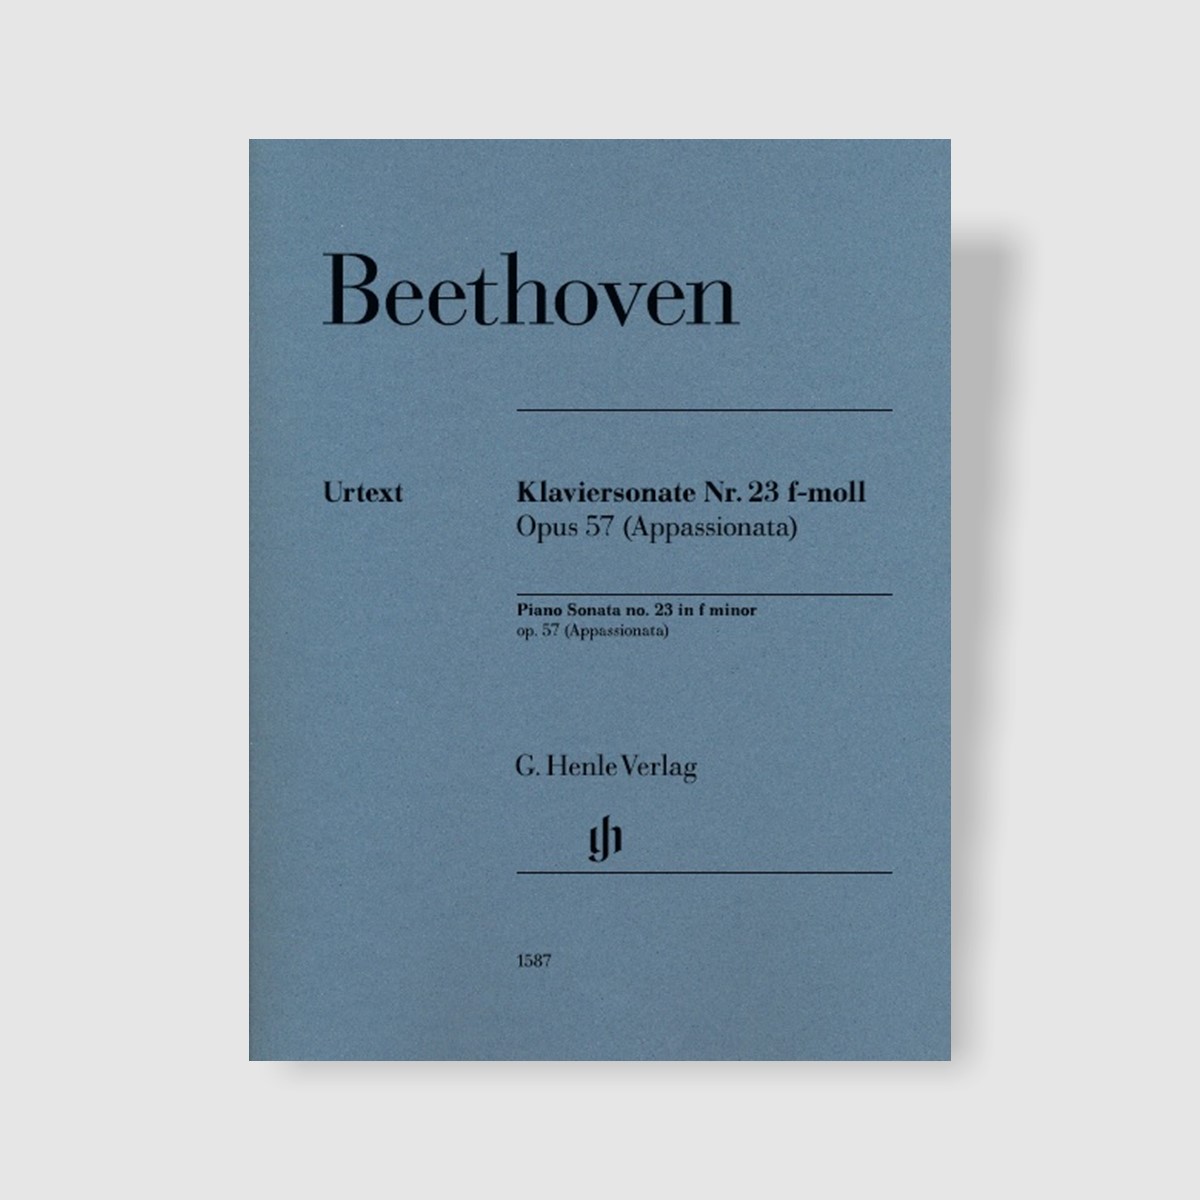 베토벤 피아노 소나타 No. 23 in f minor, Op. 57 (Appassionata)